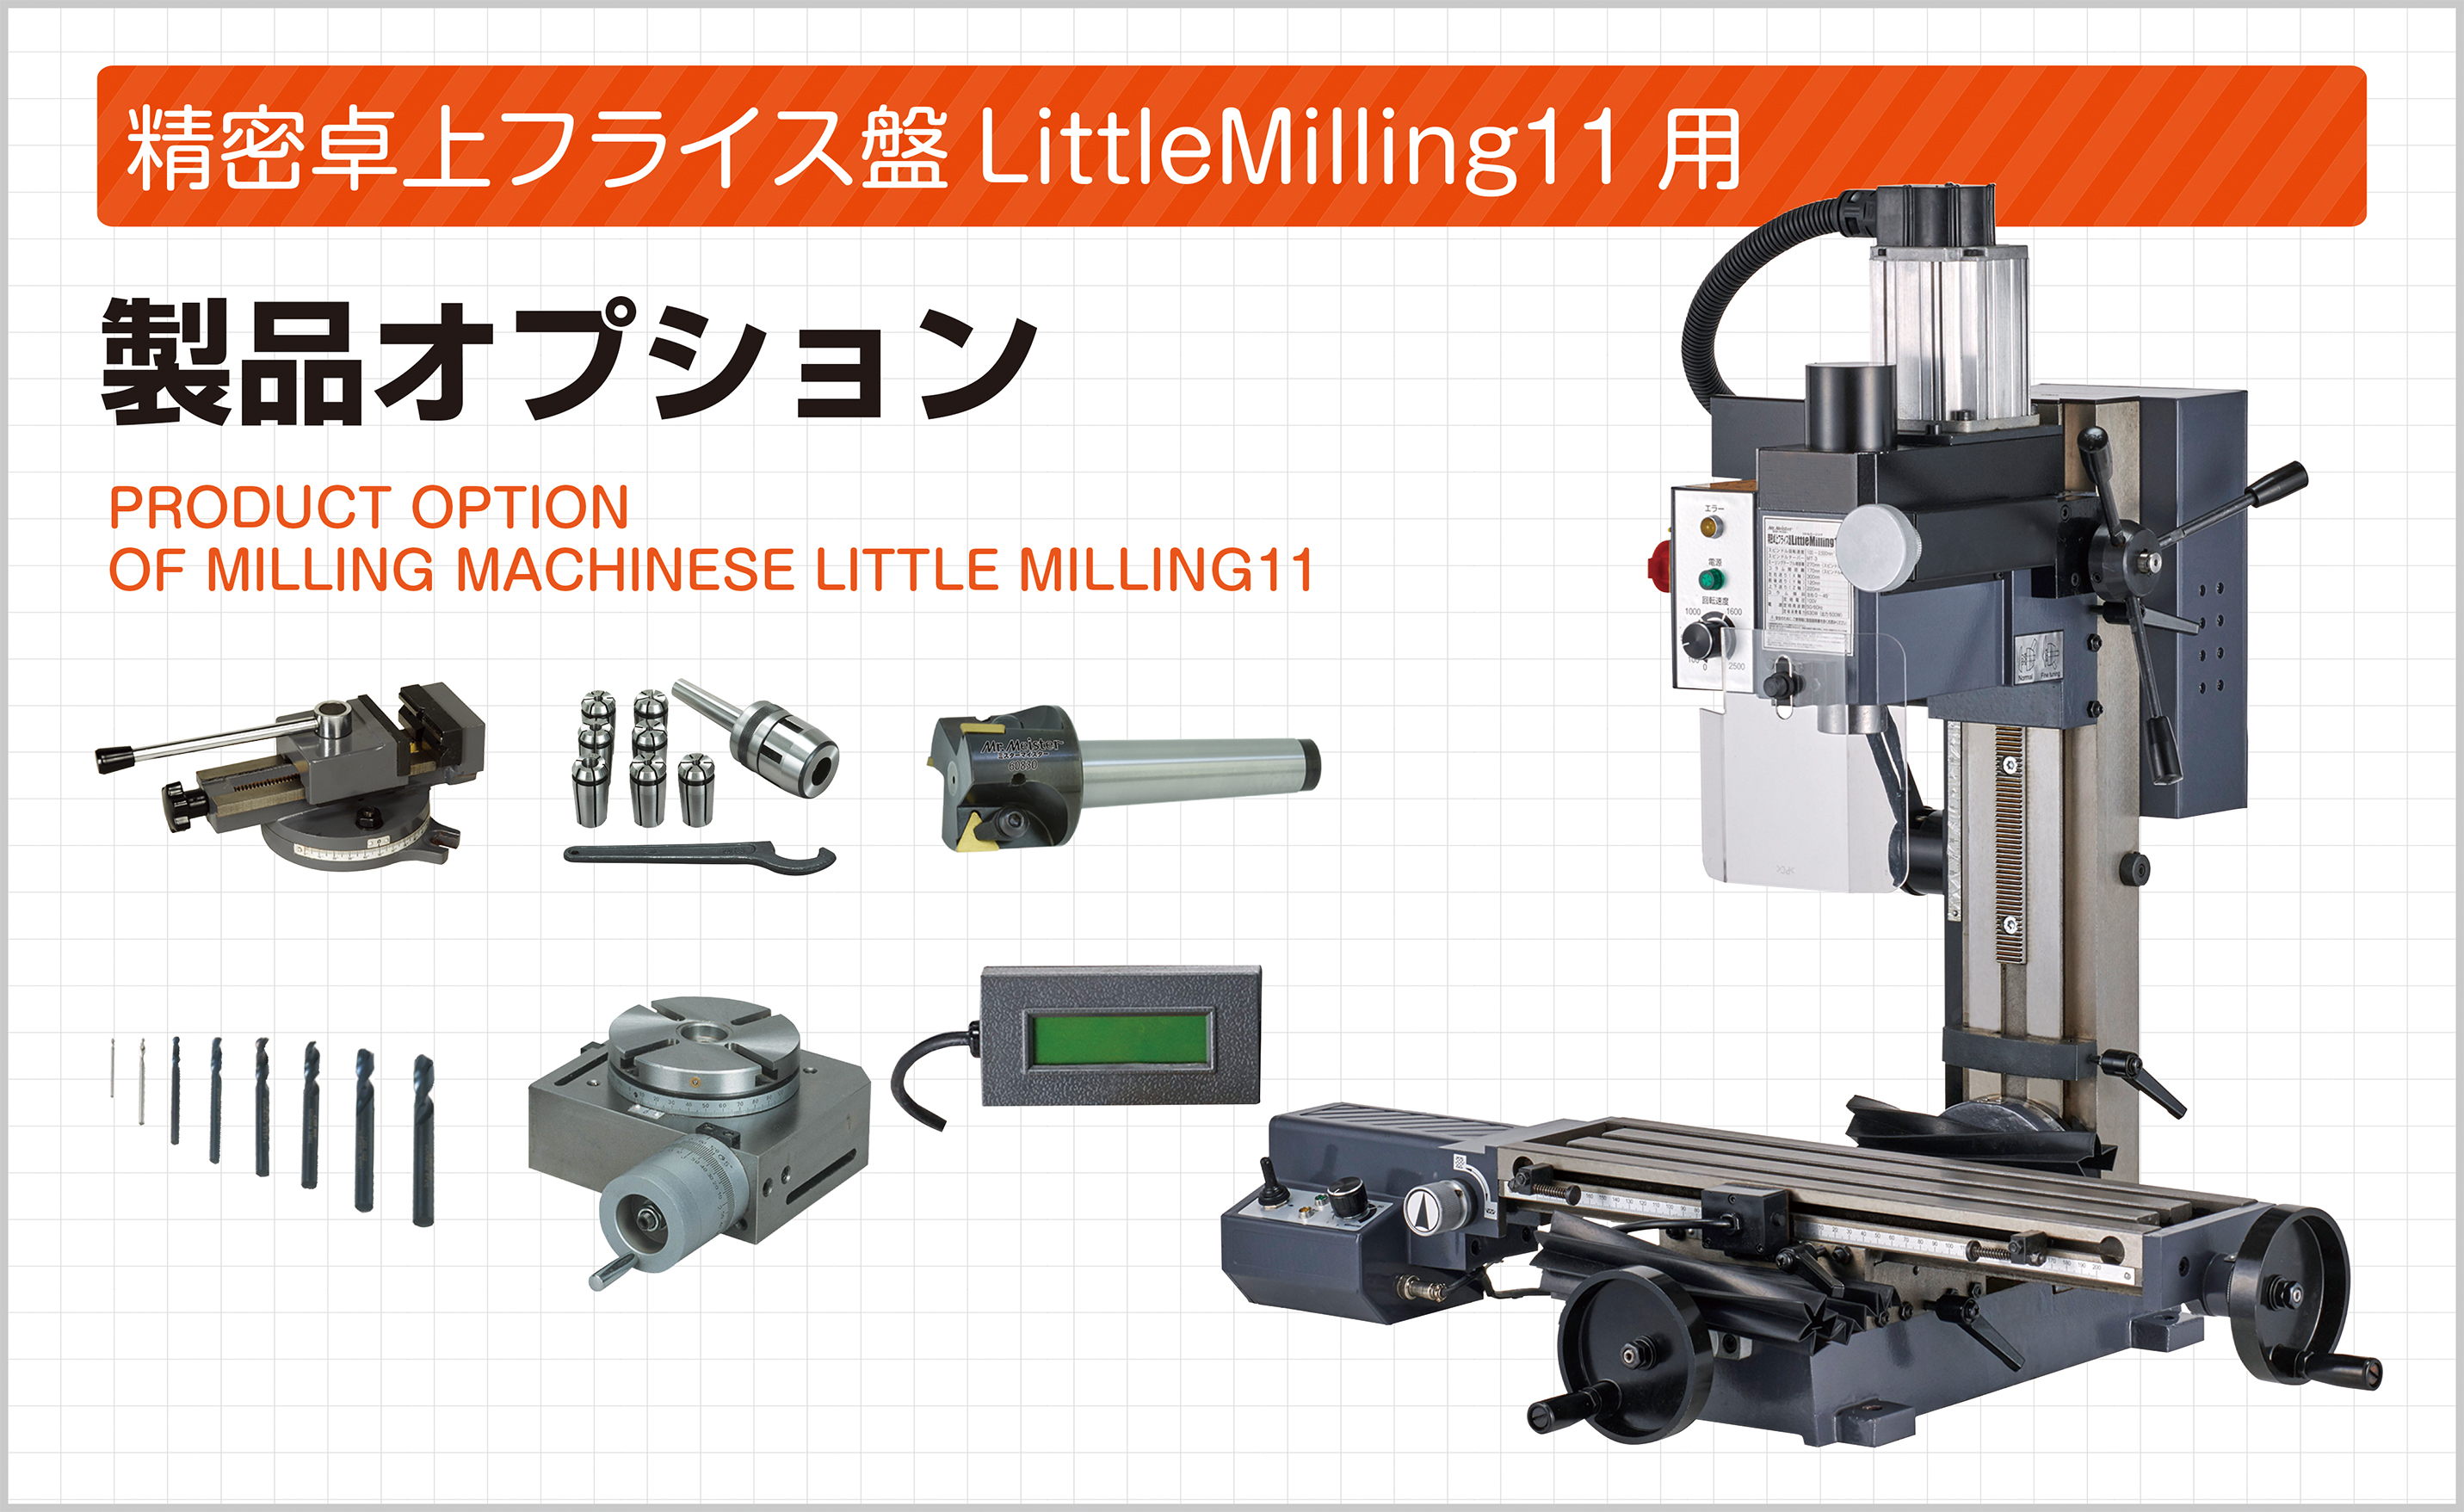 ミスターマイスター フライス盤 LittleMilling9用 オプションパーツ コレットホルダーセット [MT-3] [60750]